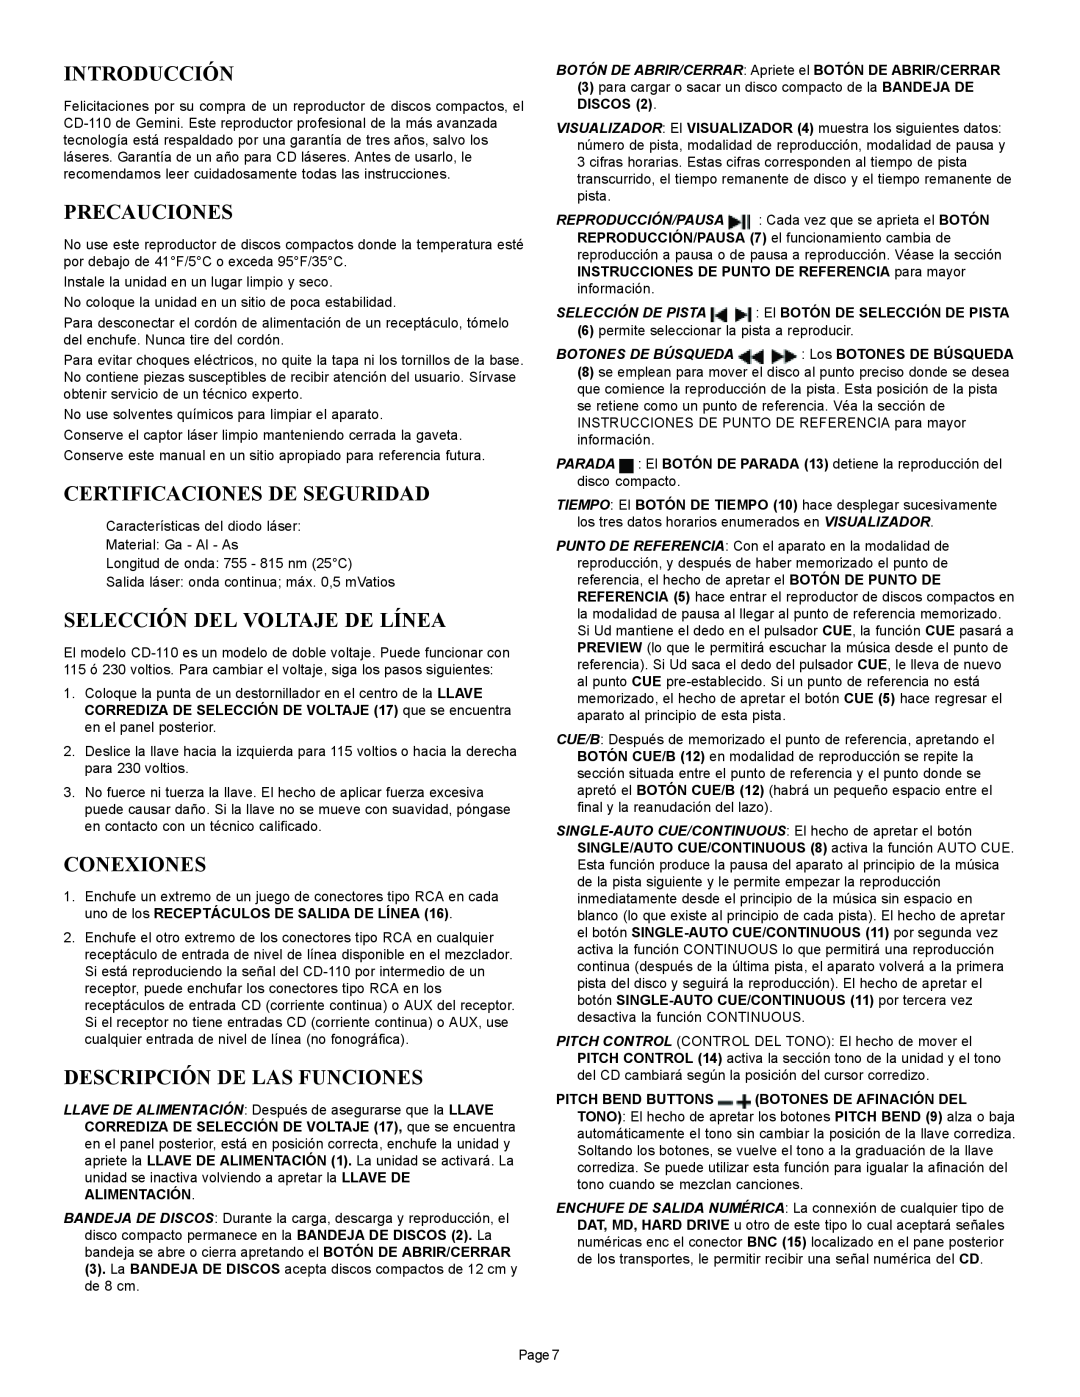 Gemini CD-110 manual Introducción, Precauciones, Certificaciones De Seguridad, Selección Del Voltaje De Línea, Conexiones 